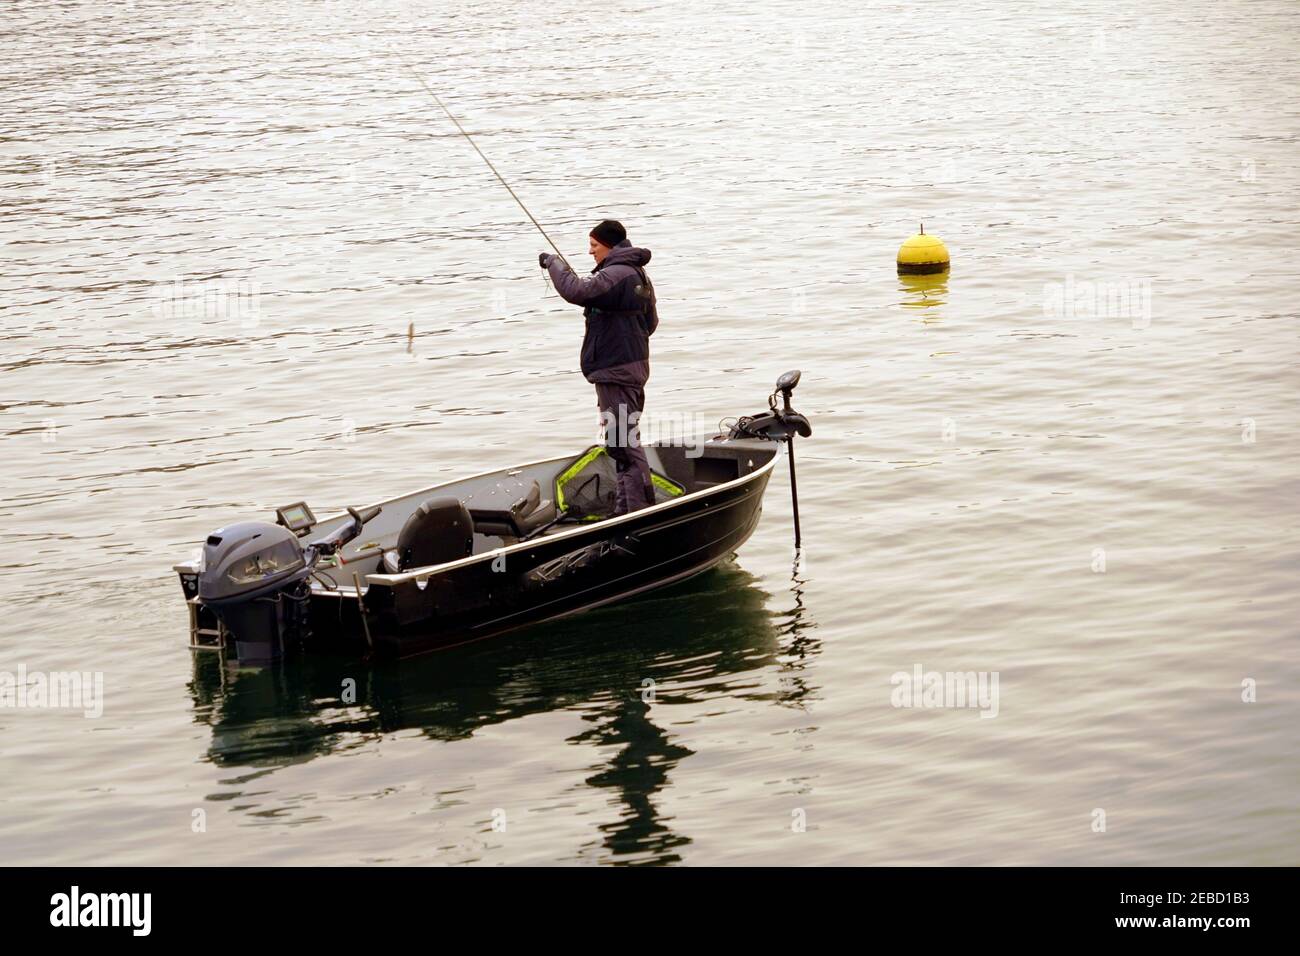 Un pêcheur hobby attachant des appâts sur le crochet du lac de Zurich en hiver. Il est debout dans un bateau et il y a une bouée jaune à la surface de l'eau. Banque D'Images